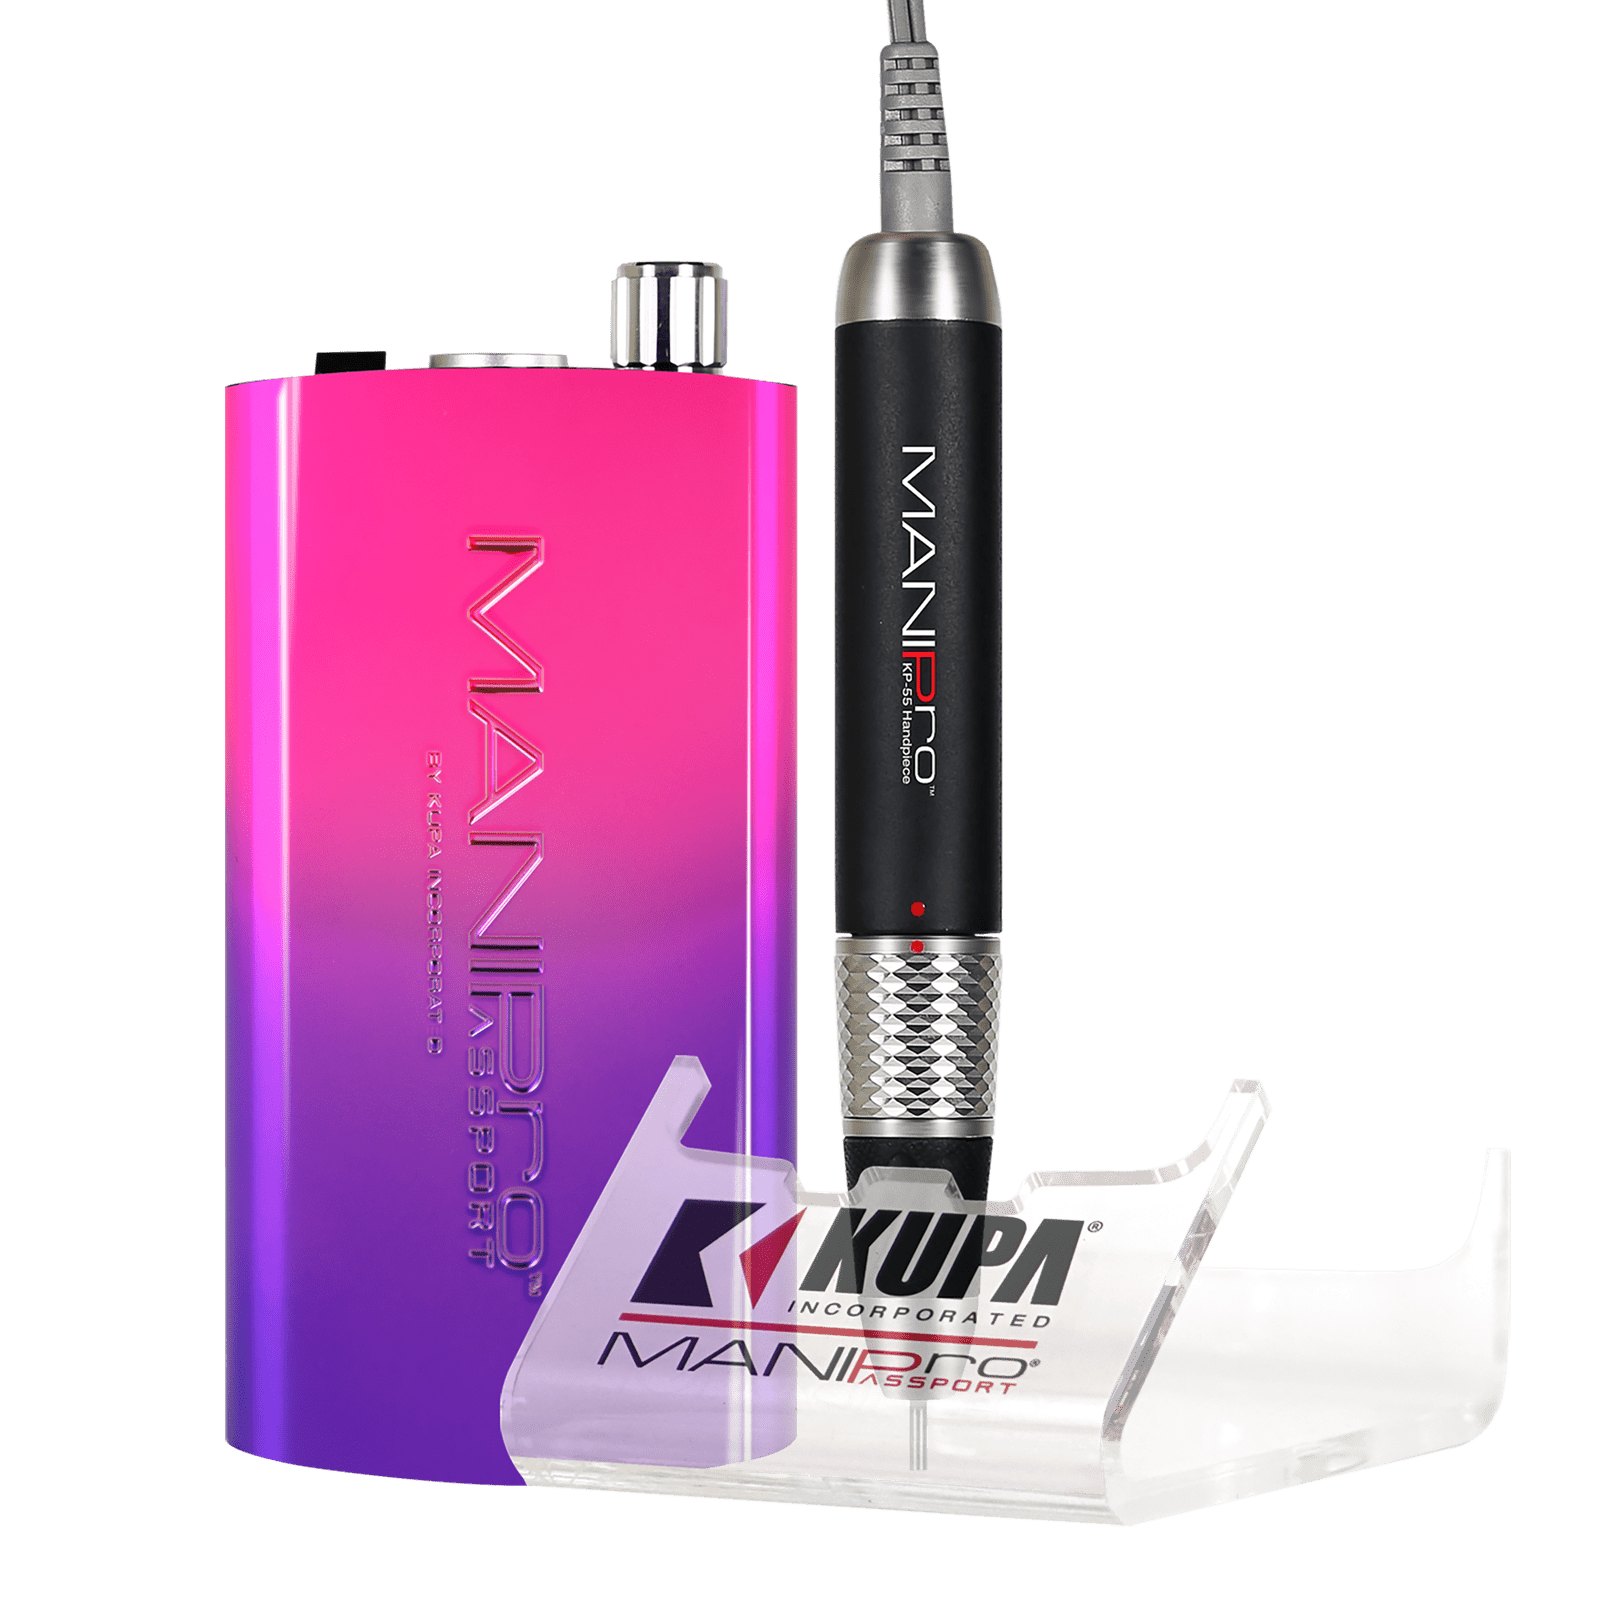 Kupa ManiPro Passport Nail Drill - Professional Electric Nail File | KP-55 - Pixie